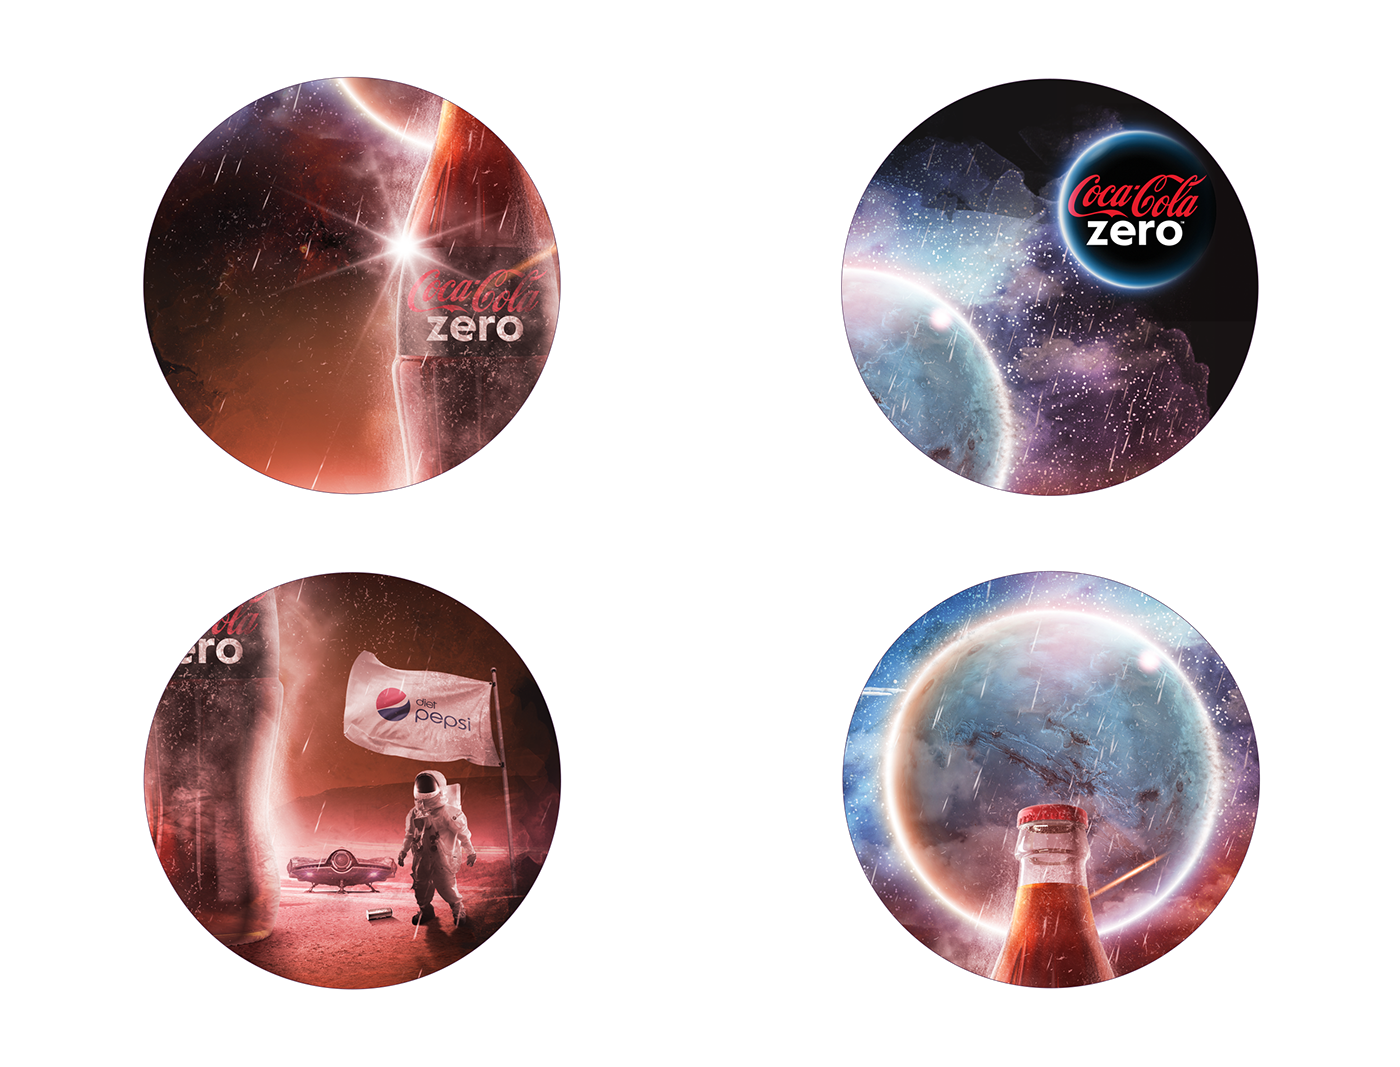 coca-cola zero Coca-Cola Space  Coca-Cola Egypt The outer space space shuttle men space gravitation mars creative